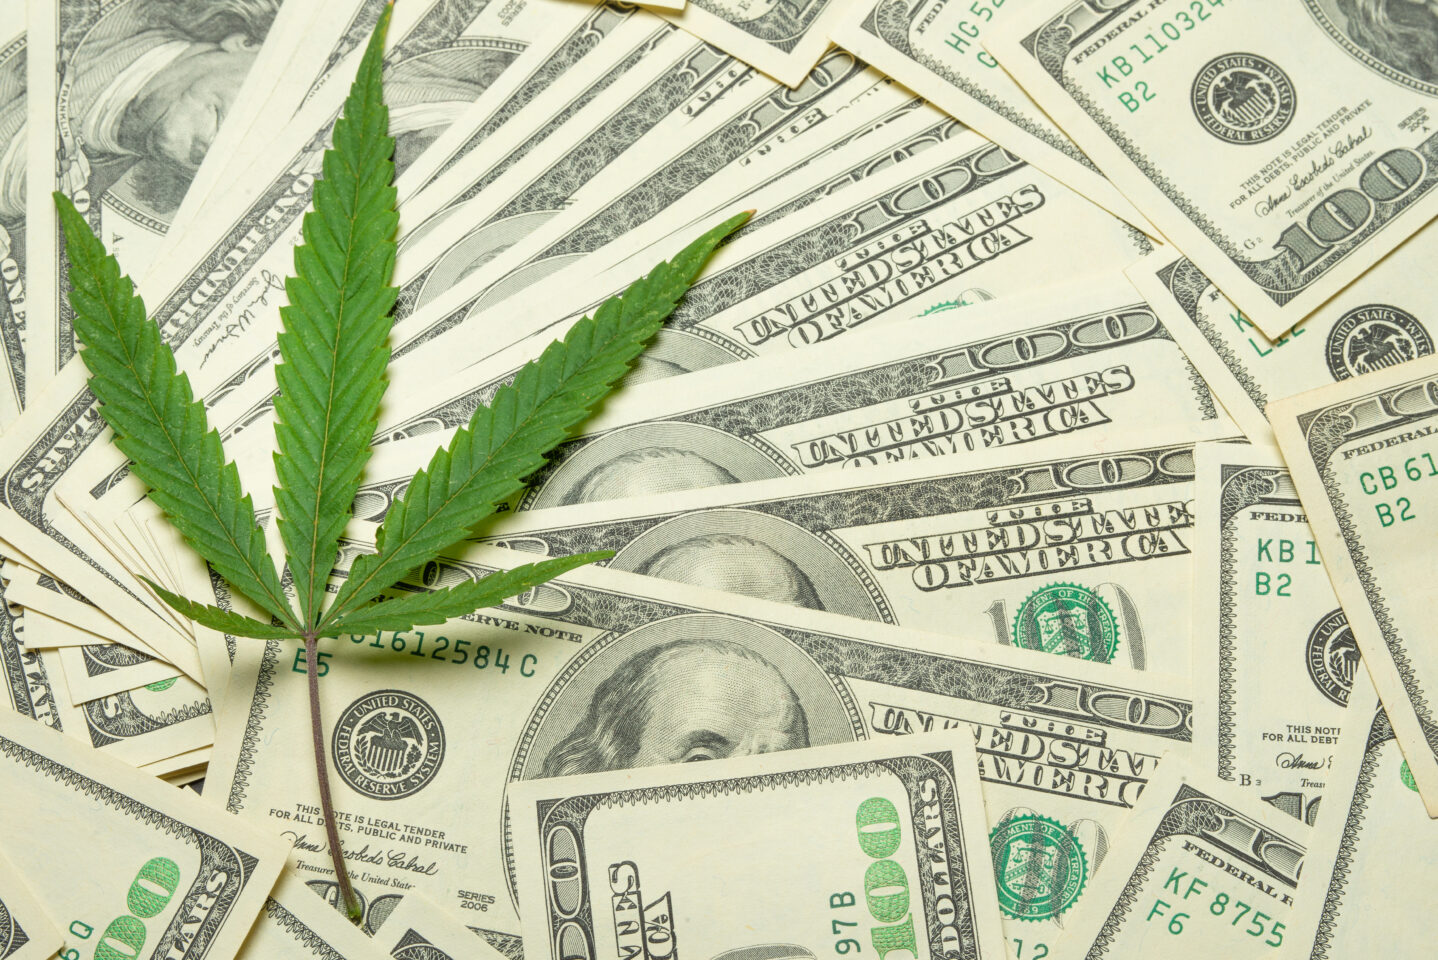 St. Louis no logra recaudar $500,000 en impuestos a la marihuana